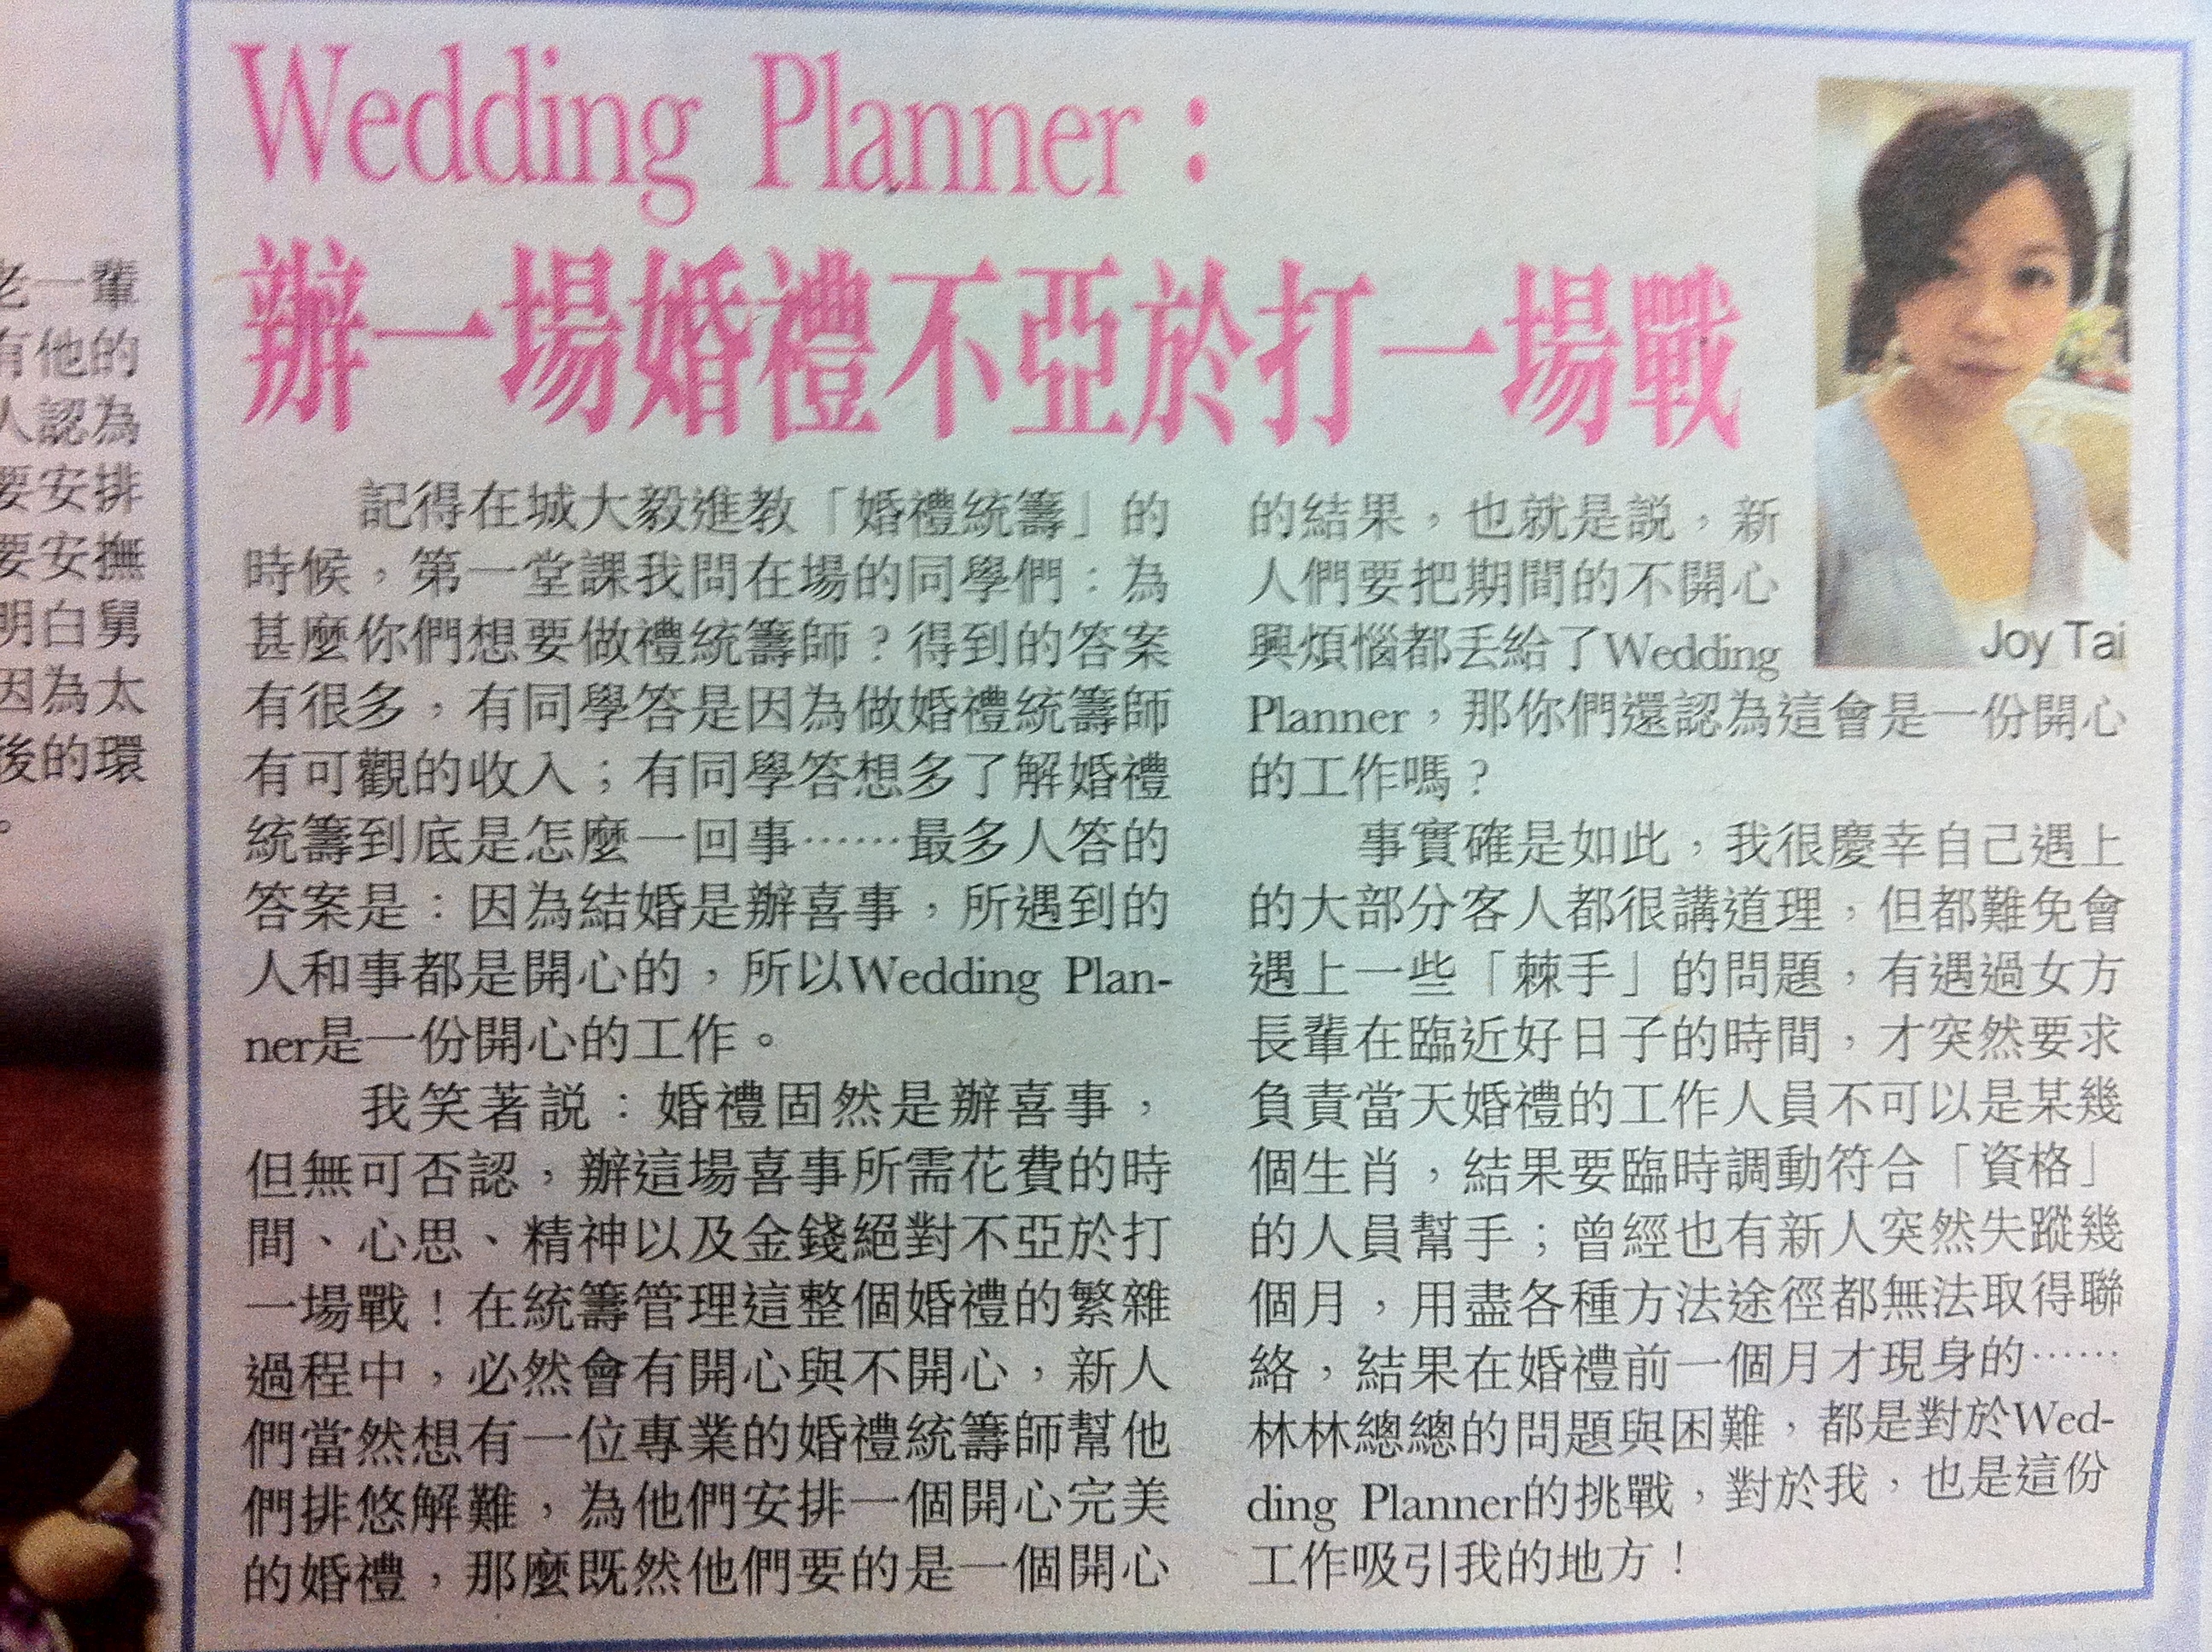 婚禮統籌師Joy Tai之媒體報導: 新晚報報導